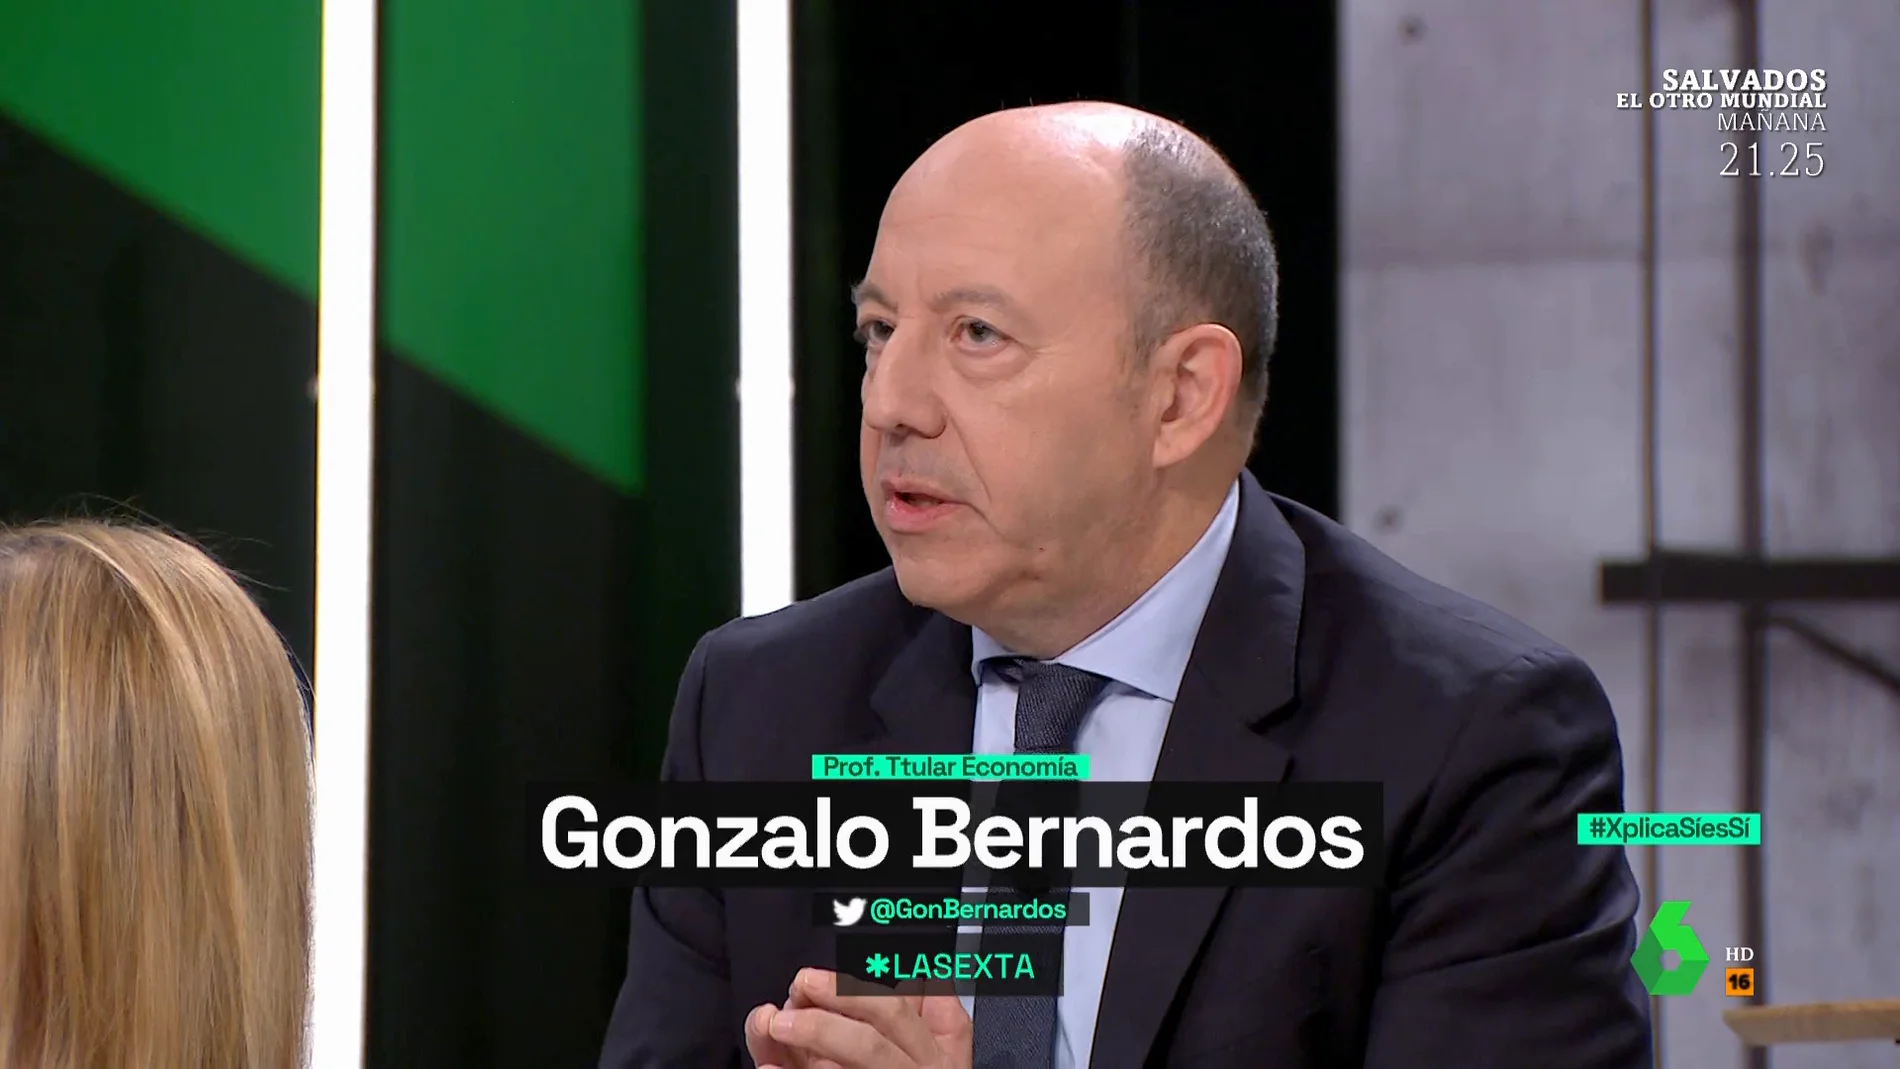 El consejo de Gonzalo Bernardos a todos los españoles a punto de jubilarse: "Miren esa hoja. Es importante"